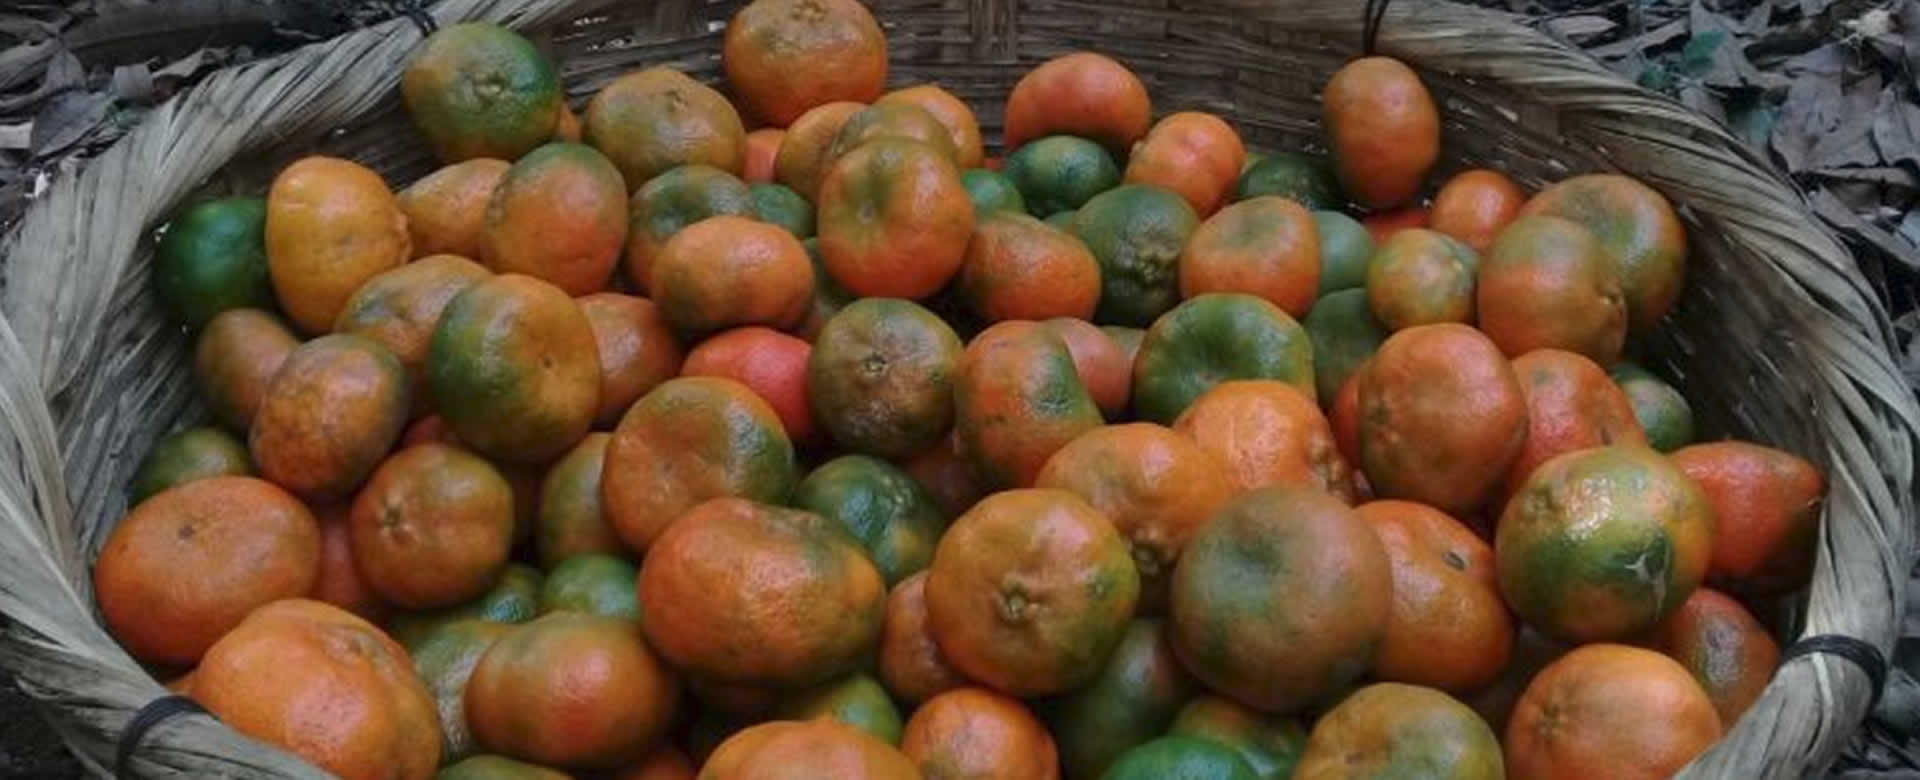 ¿Sabías que gastar 2 córdobas en mandarina evita células cancerígenas?